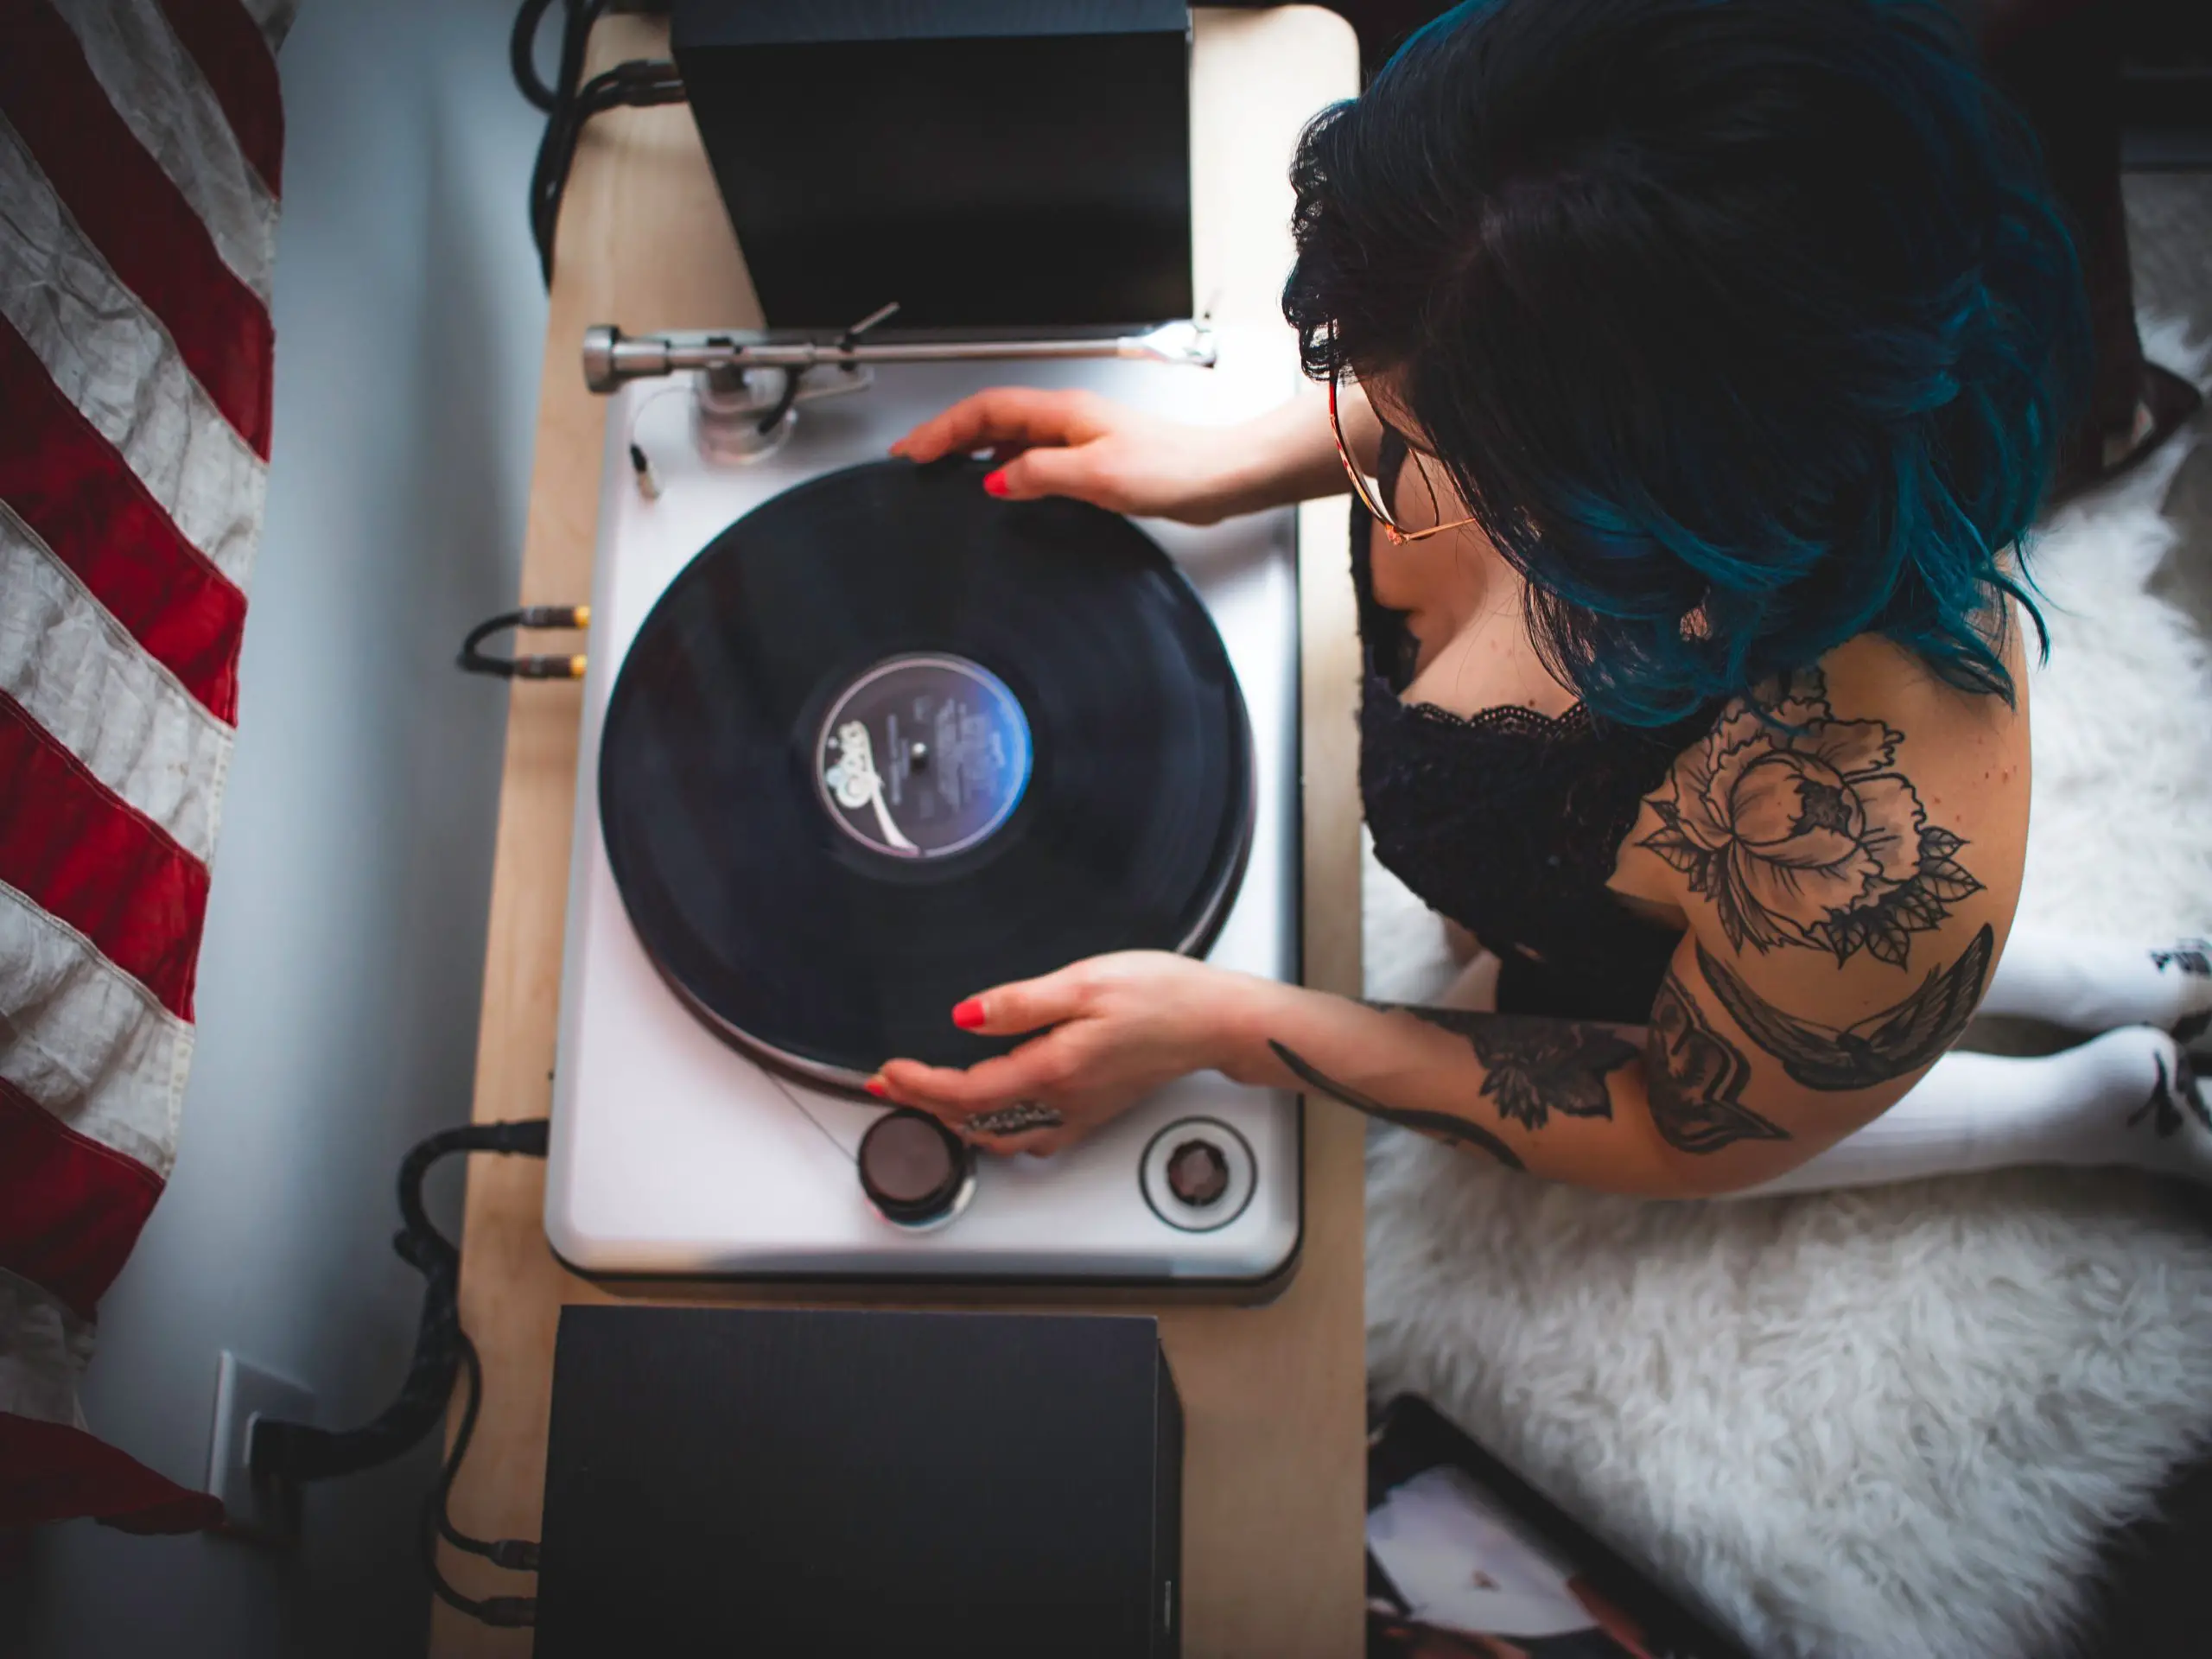 Comment bien manipuler un disque vinyle pour éviter de l’abimer ?